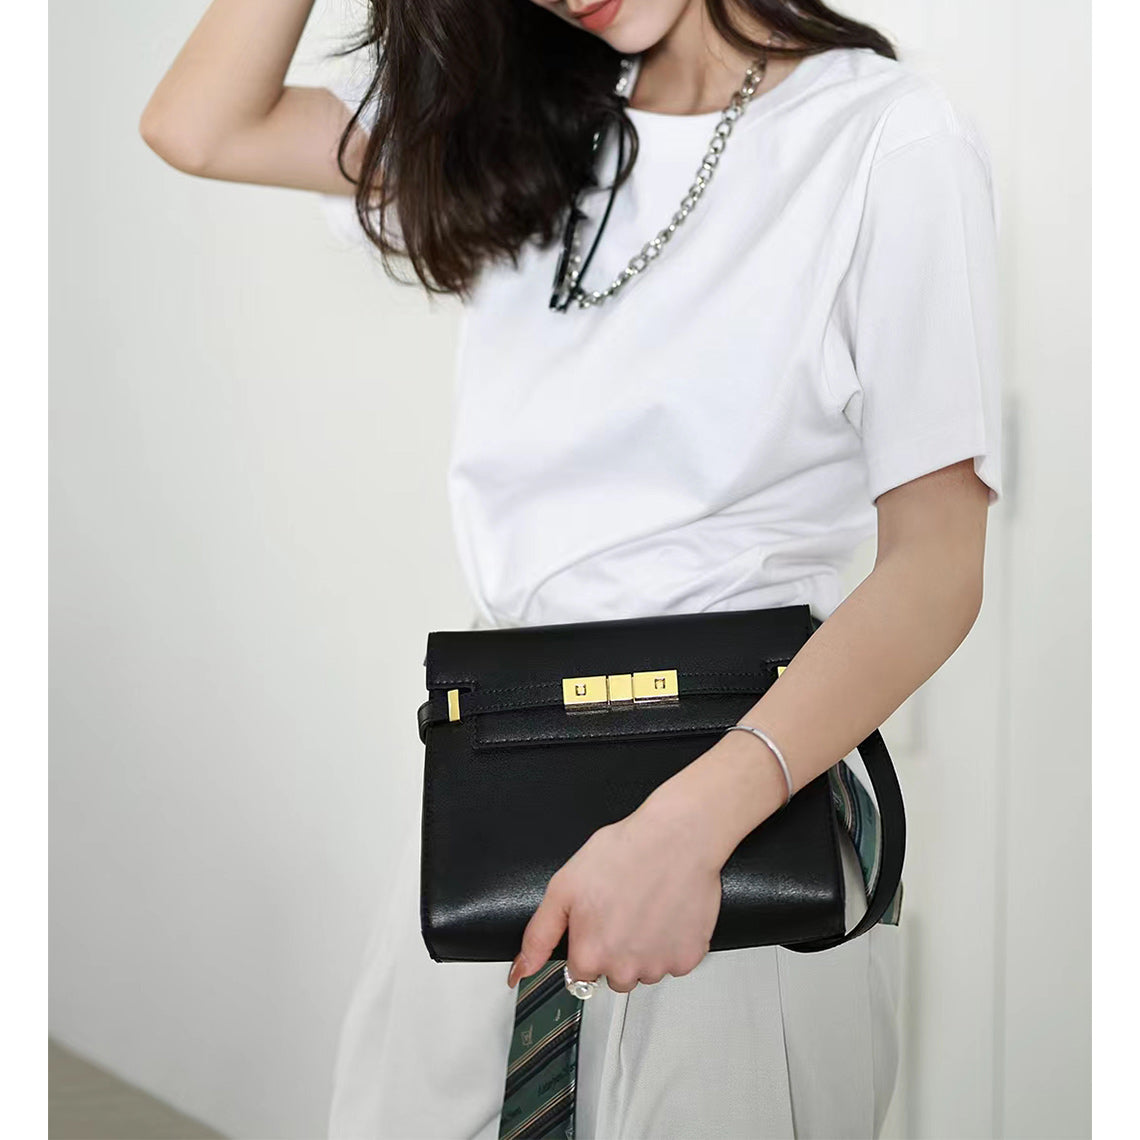 Medium Square Crossbody Handbag in Black | Handmade Women's Crossbody Bag - POPSEWING™